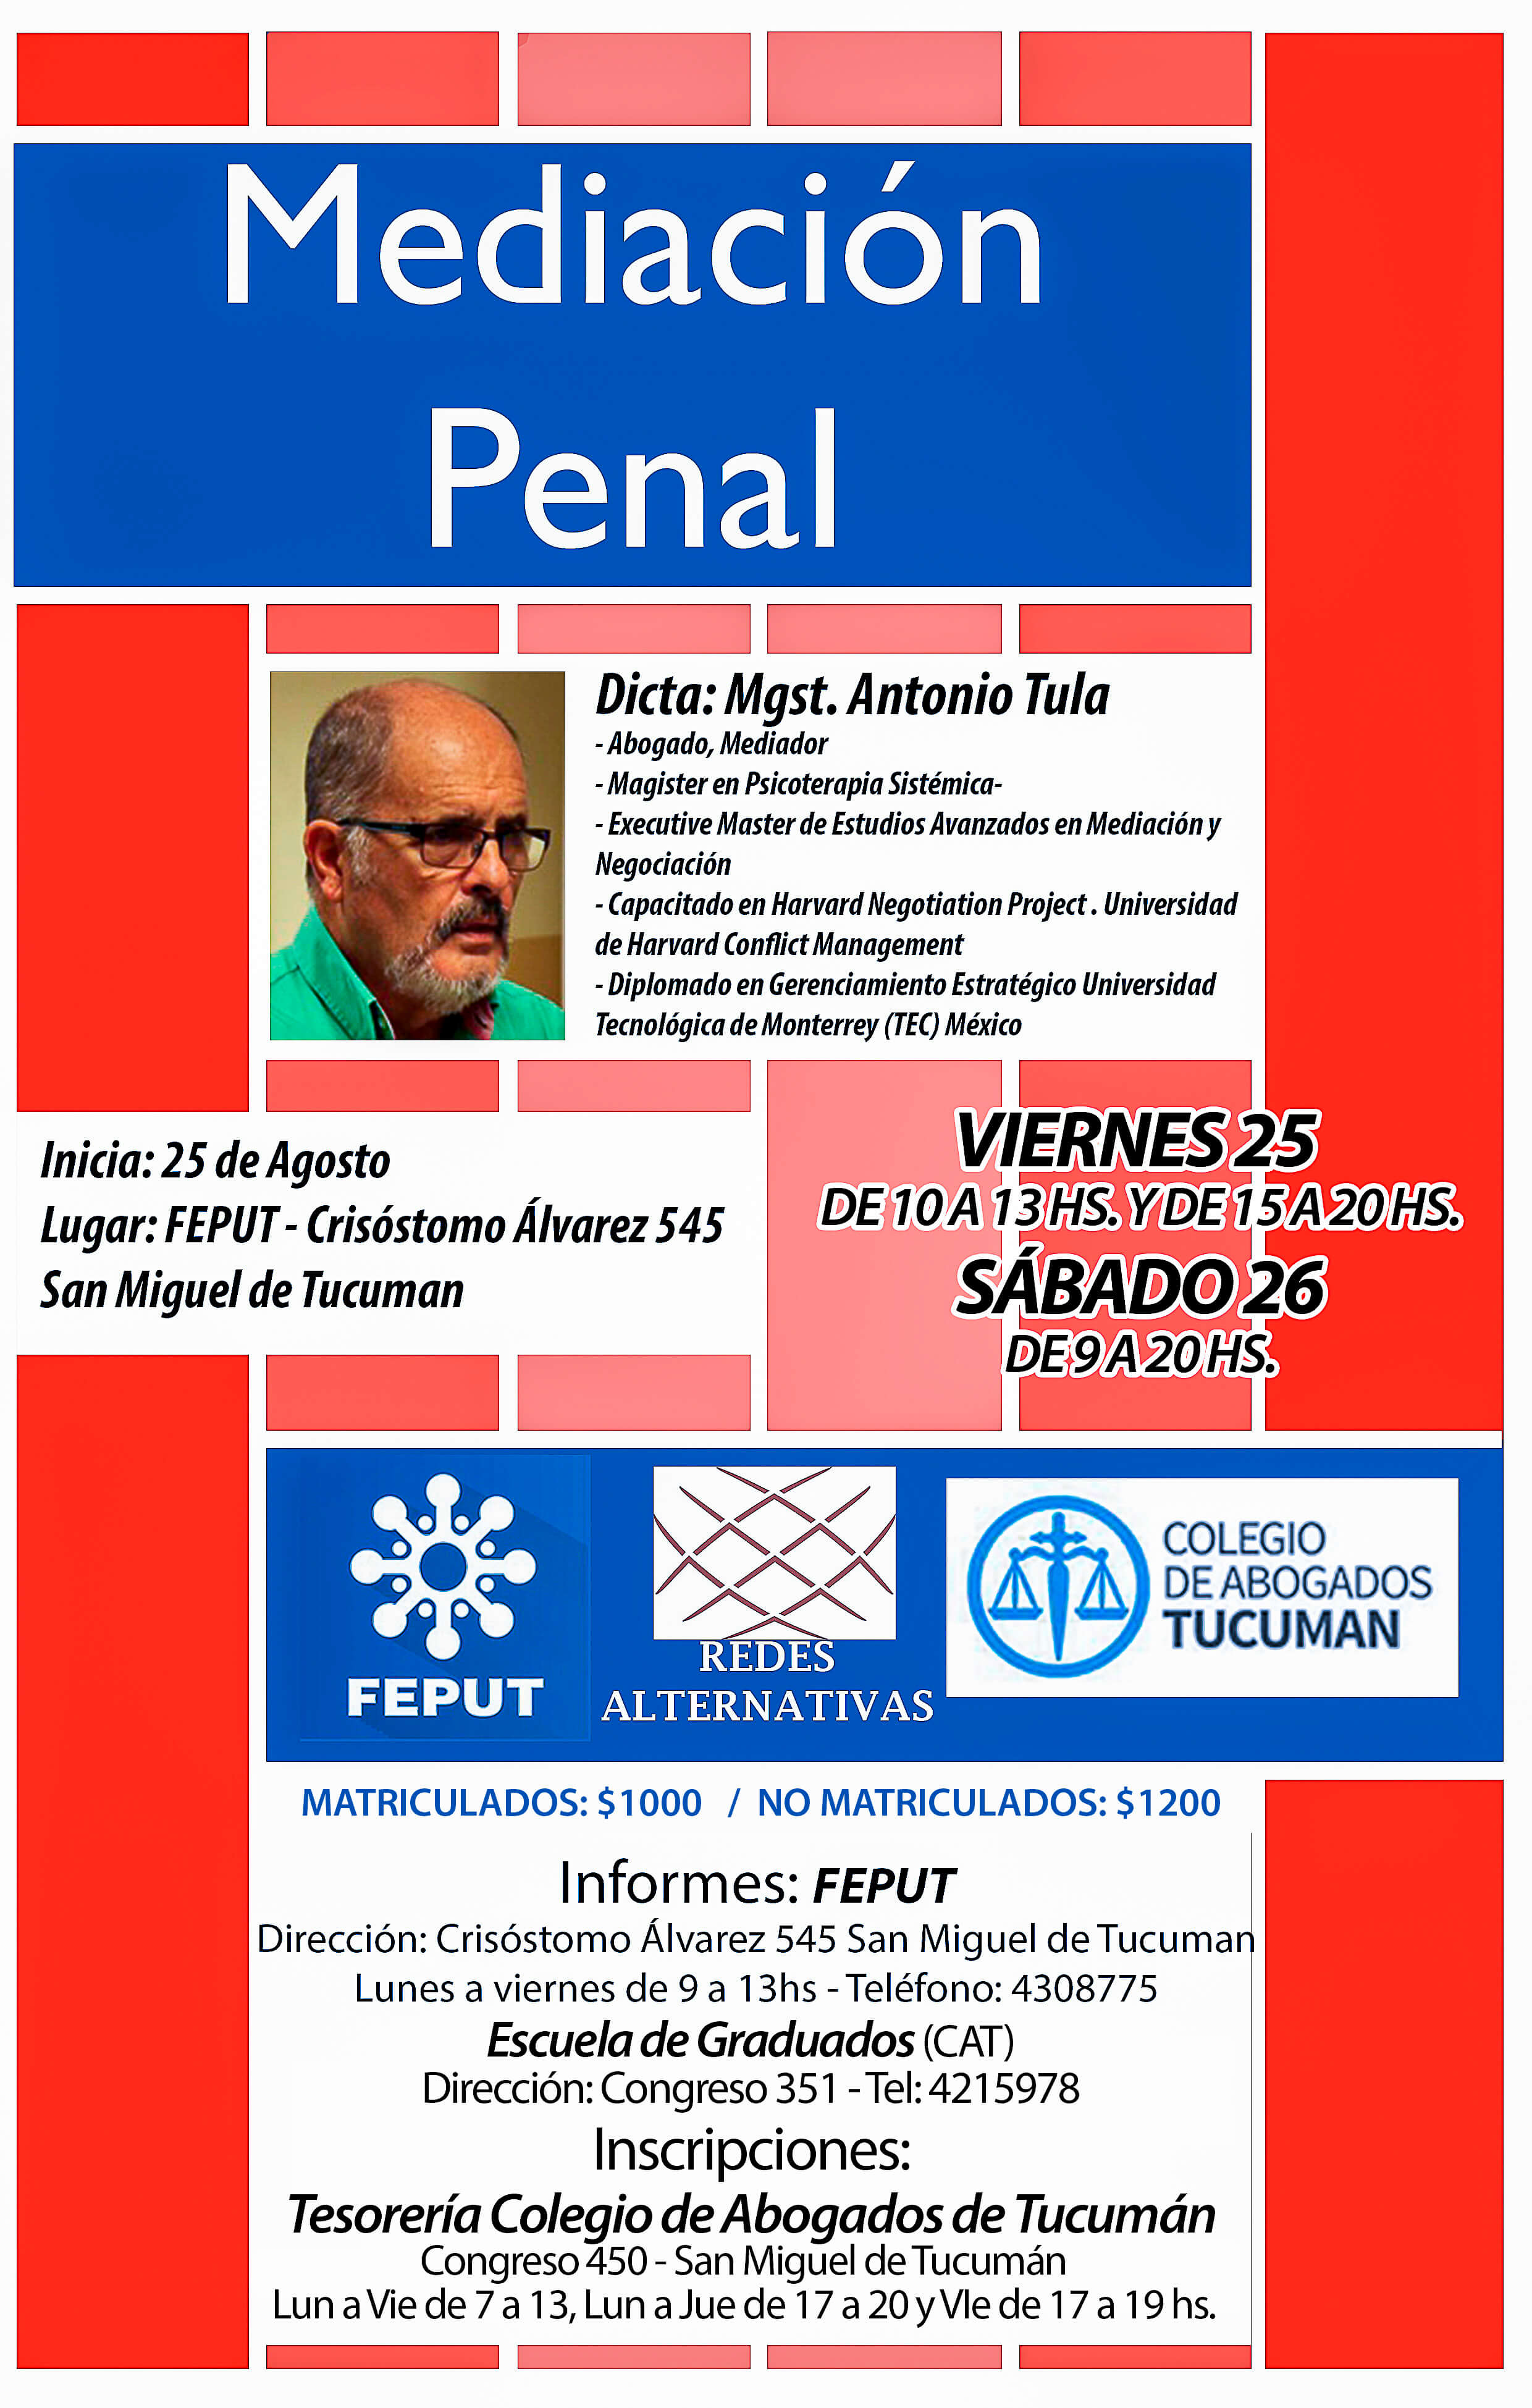 Mediación Penal Tucuman 2017